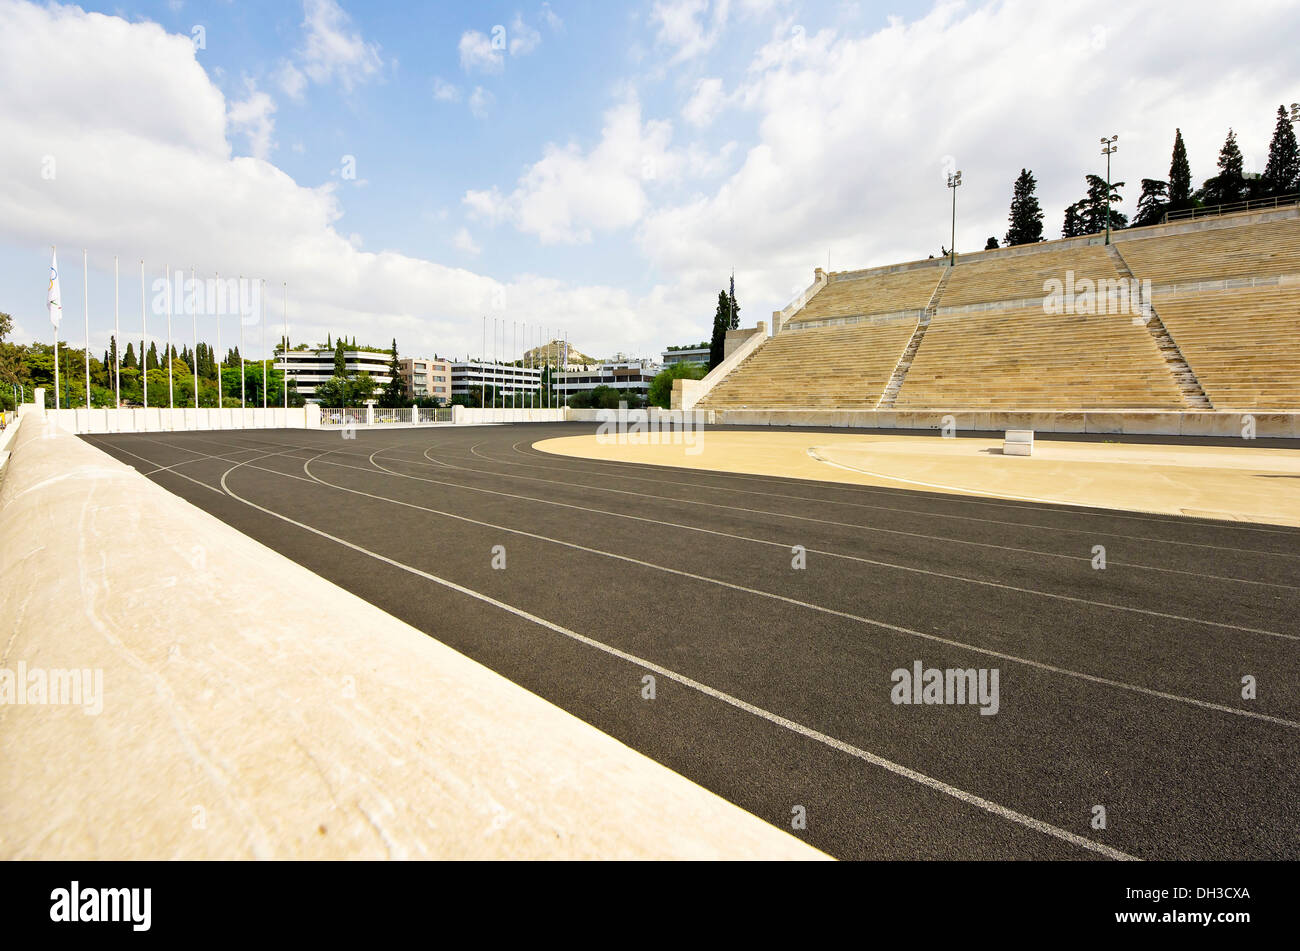 Stade Panathinaikos des premiers Jeux Olympiques modernes en 1896, Athènes, Grèce, Europe Banque D'Images